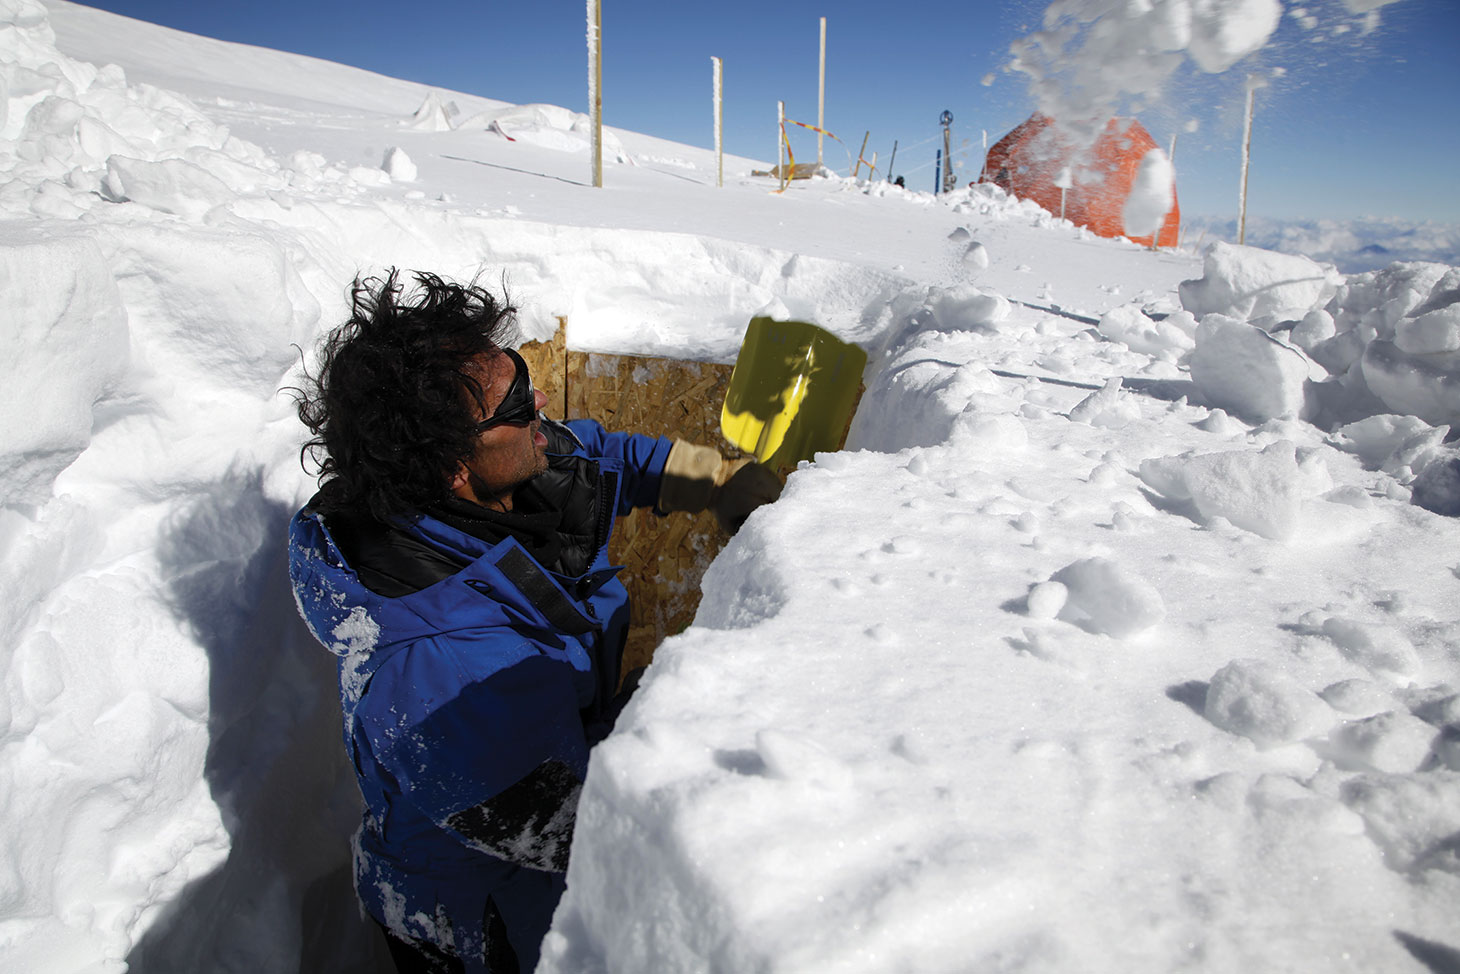 Bruno Jourdain creuse une tranchée pour le stockage des caisses de carottes de glace. Il restera là-haut au col du Dôme tout le temps de la mission.